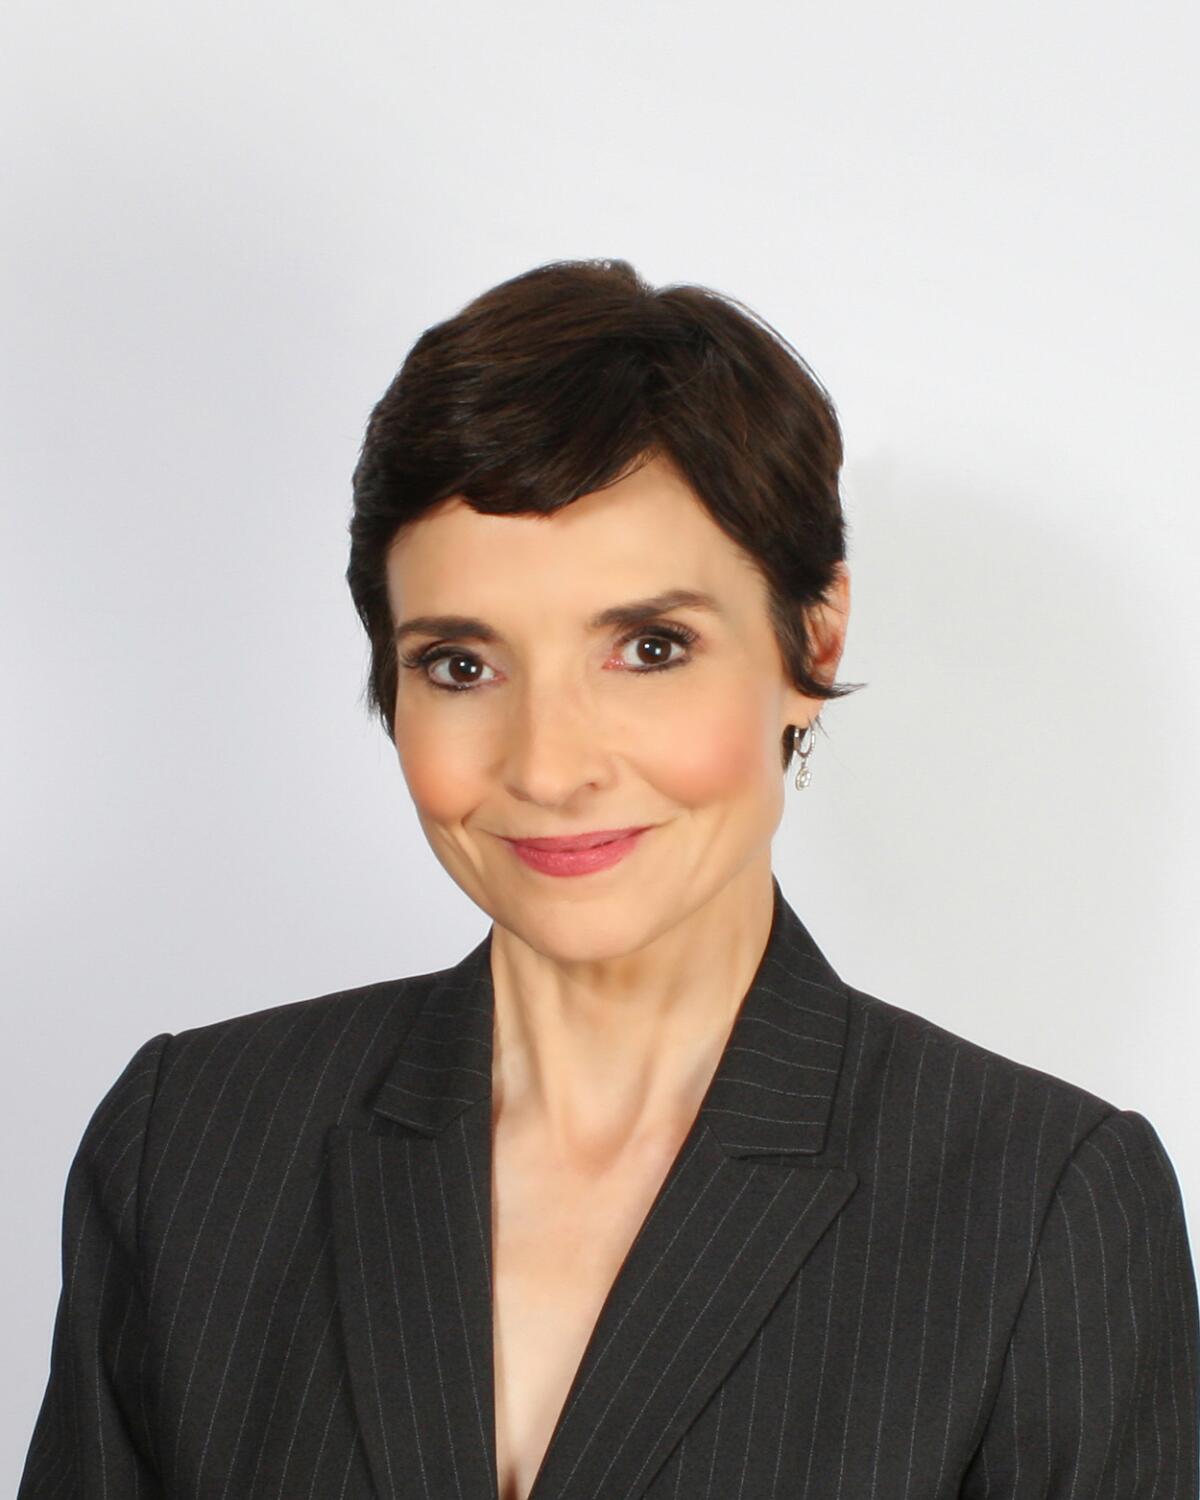 CBS News investigative correspondent Catherine Herridge